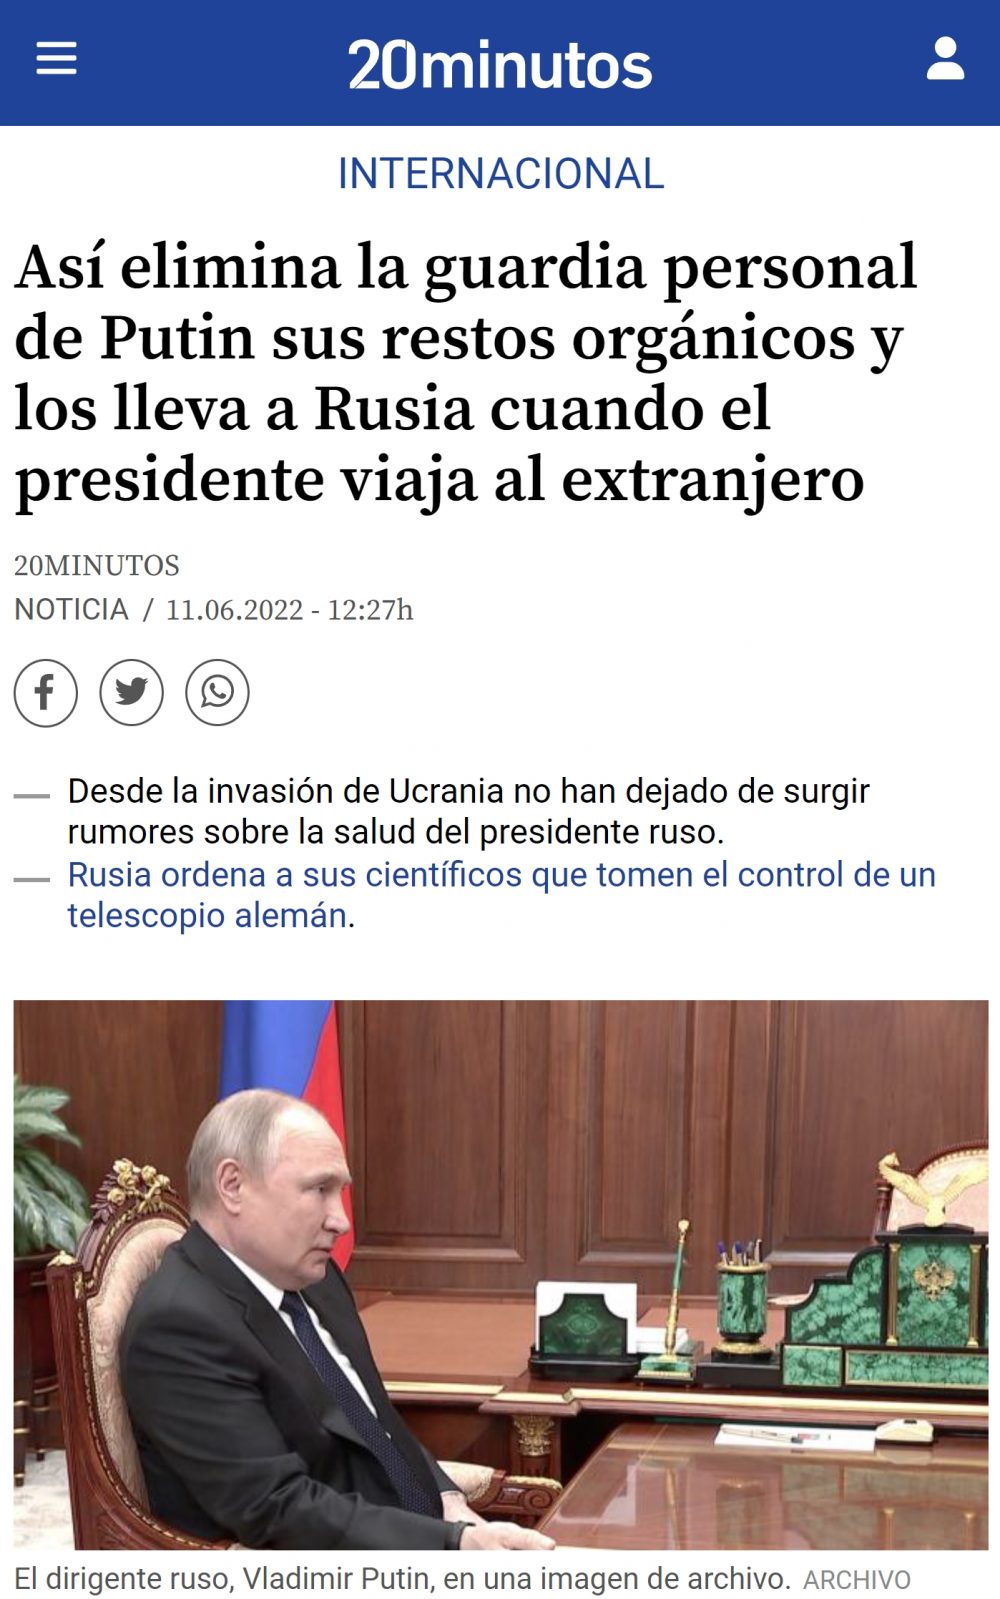 ¿Sabías que Putin se lleva de viaje su propio inodoro por todo el mundo para que nadie pueda acceder a sus restos biológicos?